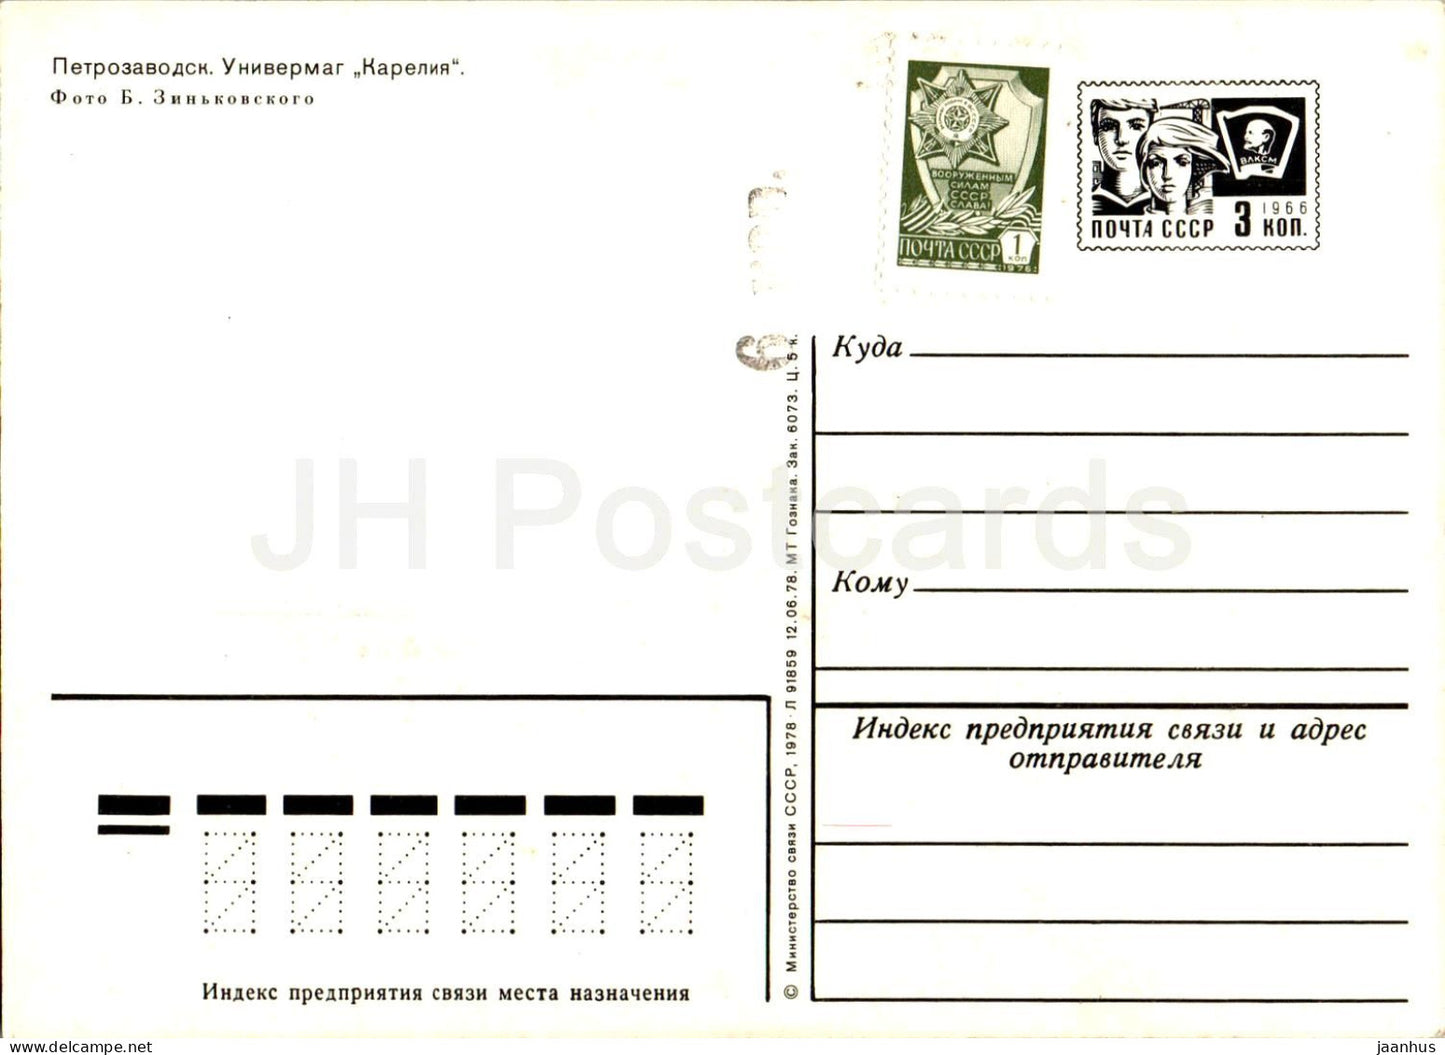 Petrozavodsk - Department store Karelia Tavaratalo - 1 - postal stationery - 1978 - Russia USSR - unused